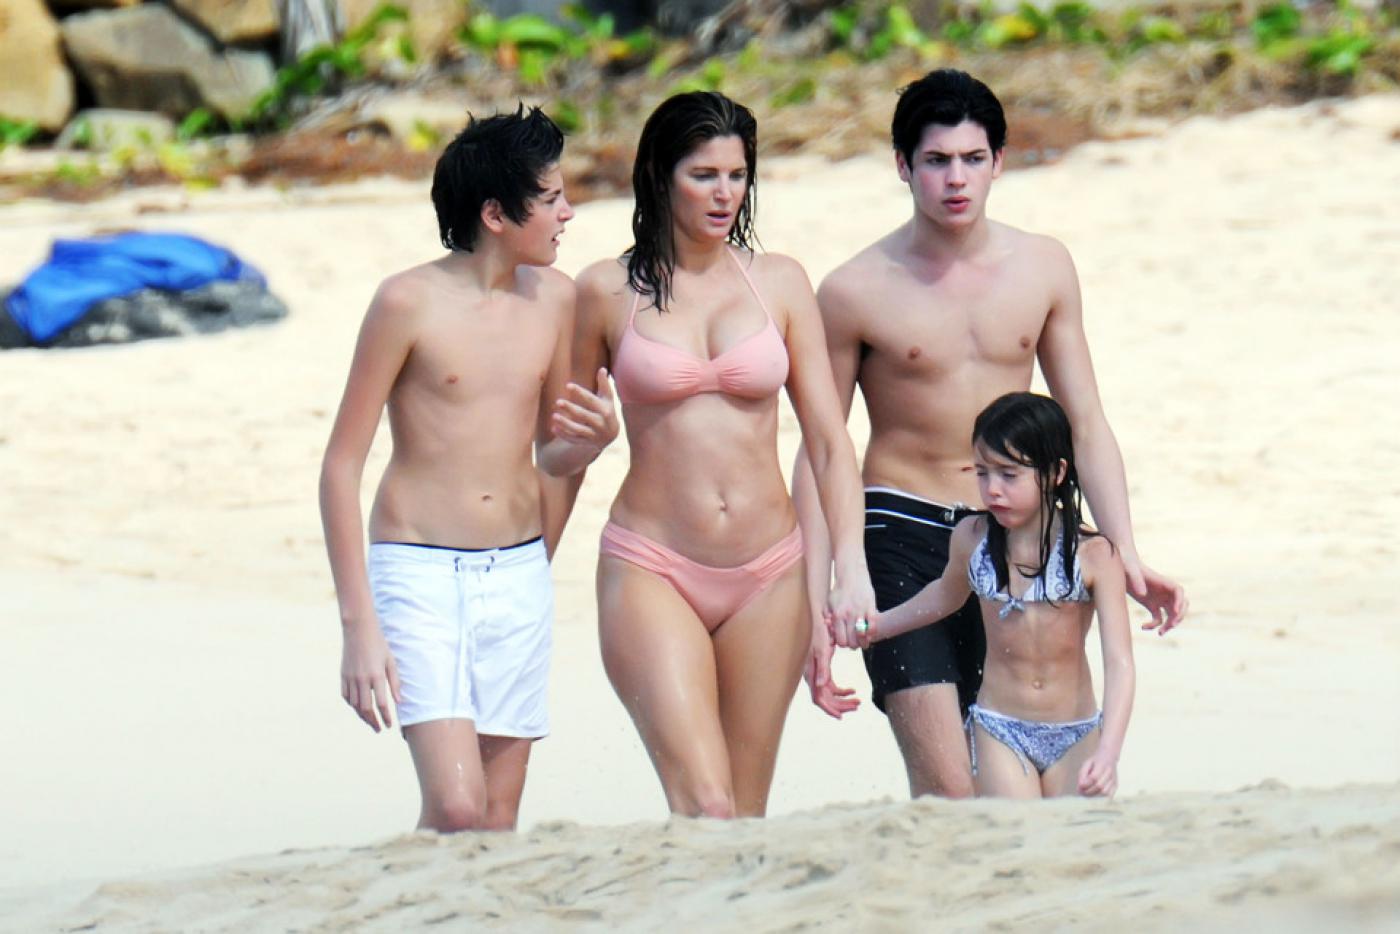 В нижнем белье перед сыном. Стефани Сеймур с сыном 2011. Стефани Сеймур с сыном. Стефани Сеймур с сыном 18. Стефани Сеймур с сыном на пляже.